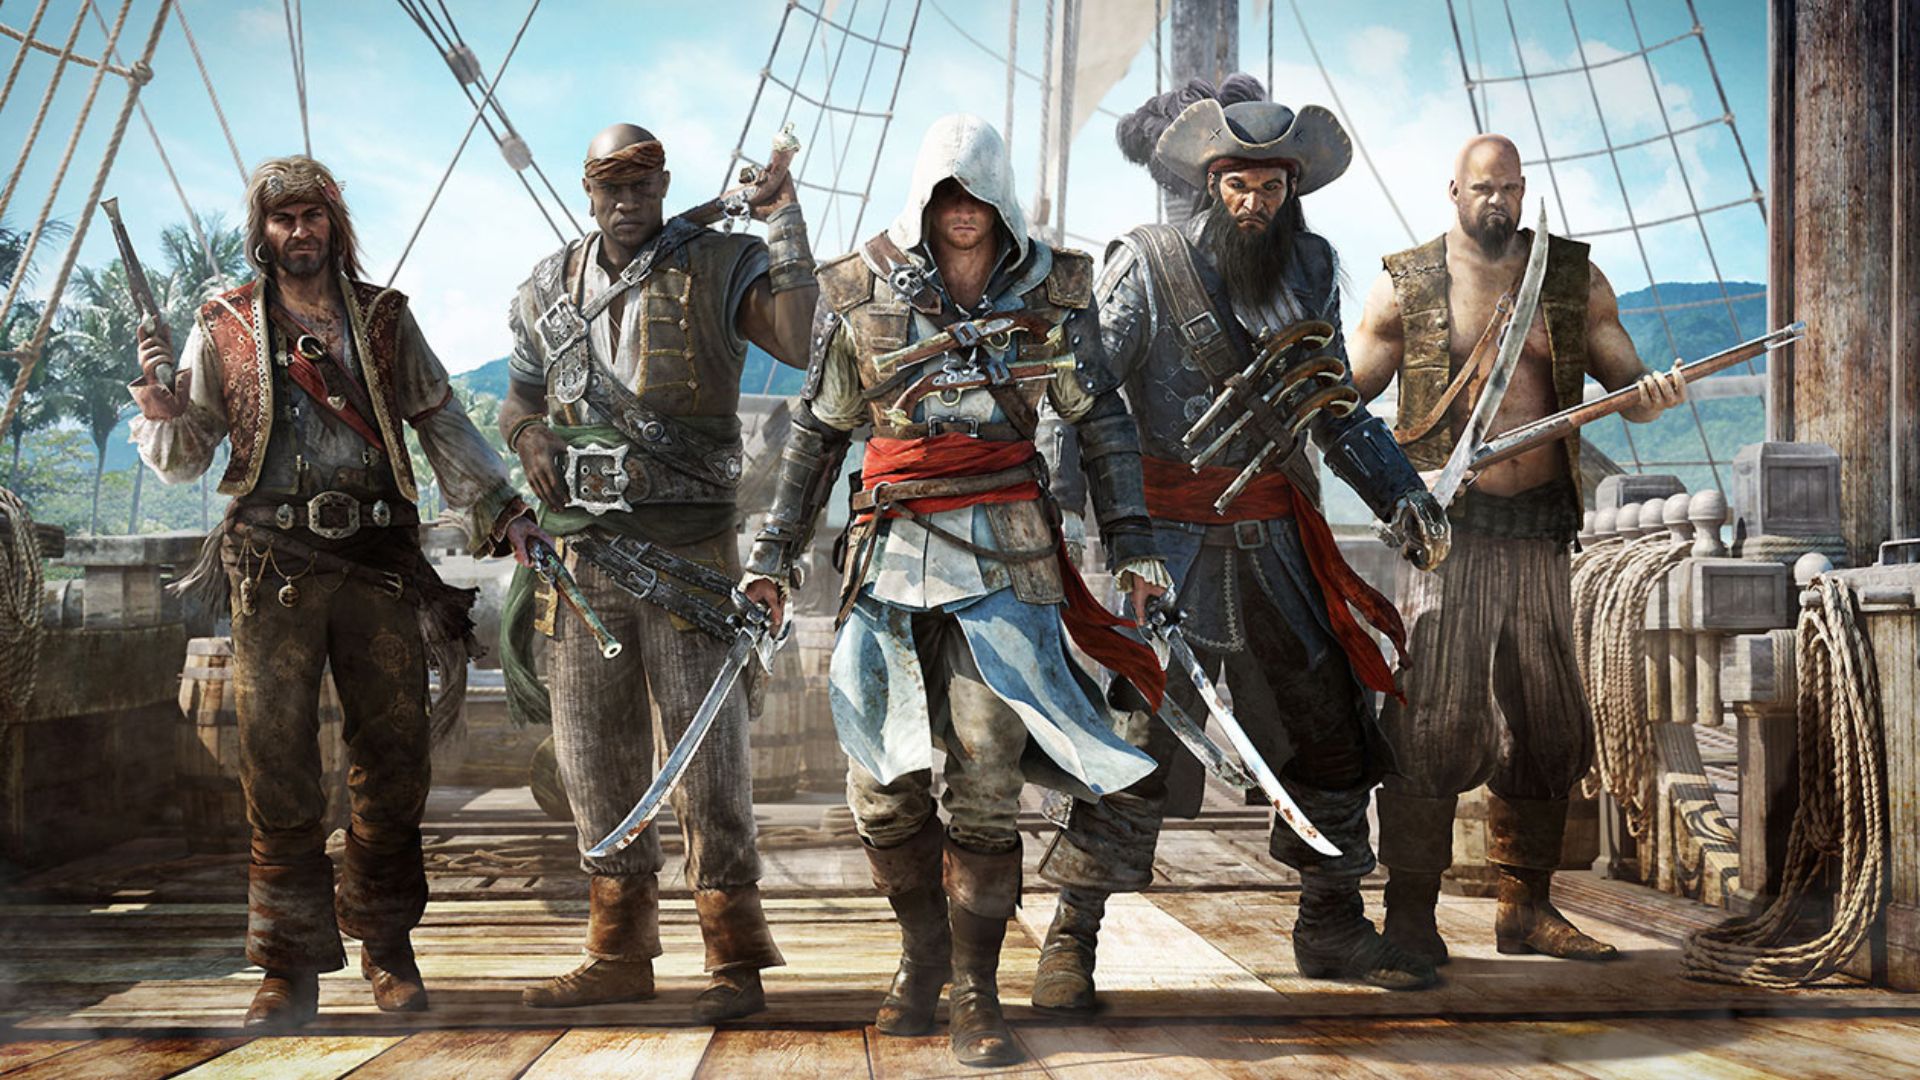 Juegos de parkour: cinco piratas en la cubierta de un barco.  En el centro hay un pirata encapuchado con túnicas blancas de pirata con dos espadas extendidas.  El resto es tan genérico como los piratas.  Cosas apropiadas de piratas piratas.